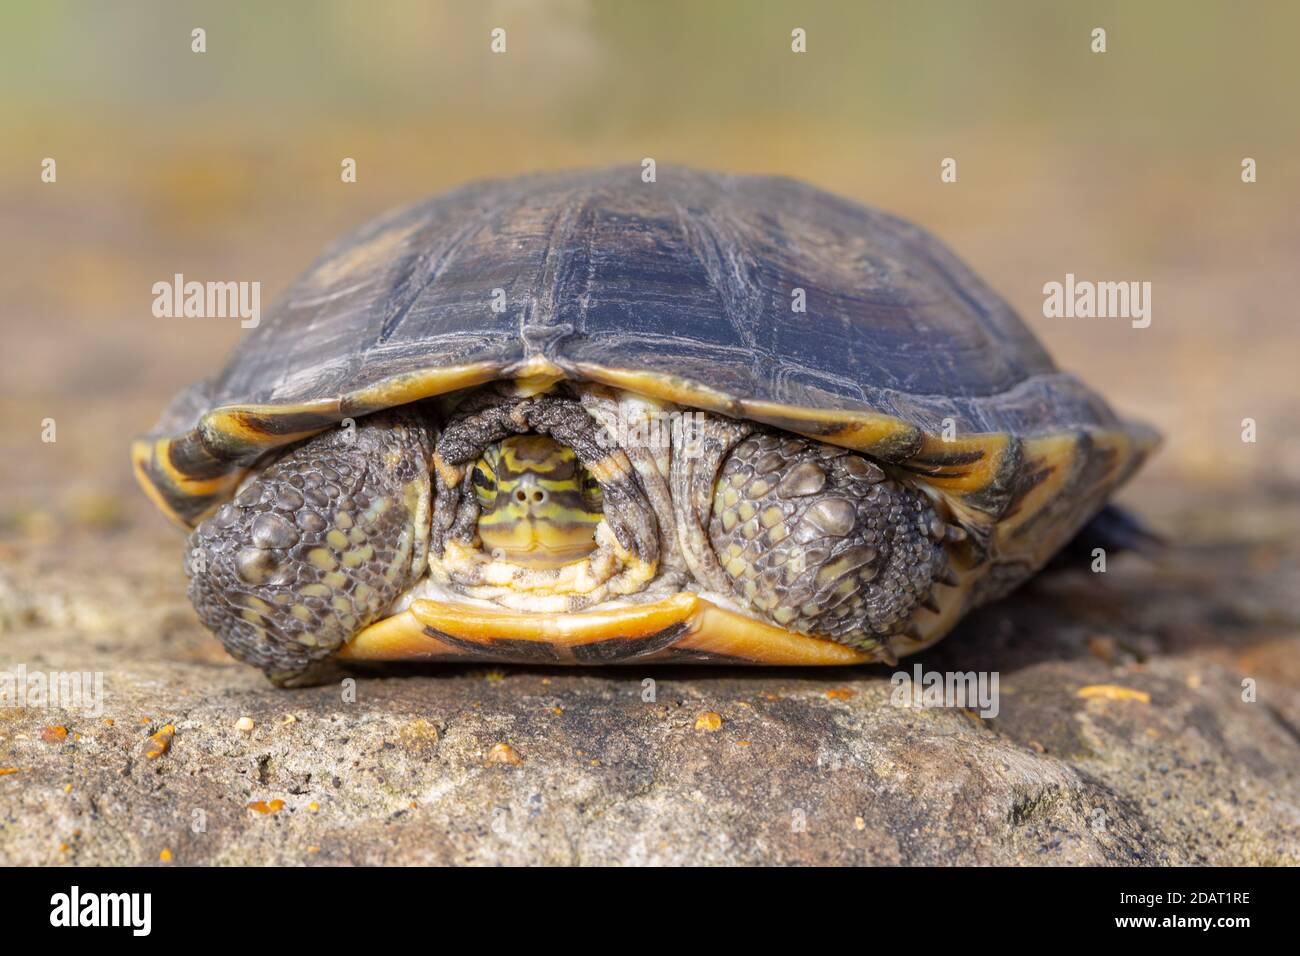 Vietnamesische oder Annan Pond Turtle oder Vietnamesische Blattschildkröte (Mauremys annamensis). Aus der Provinz Quang Nam, Annam, Zentralvietnam. Kritische Gefährdung Stockfoto